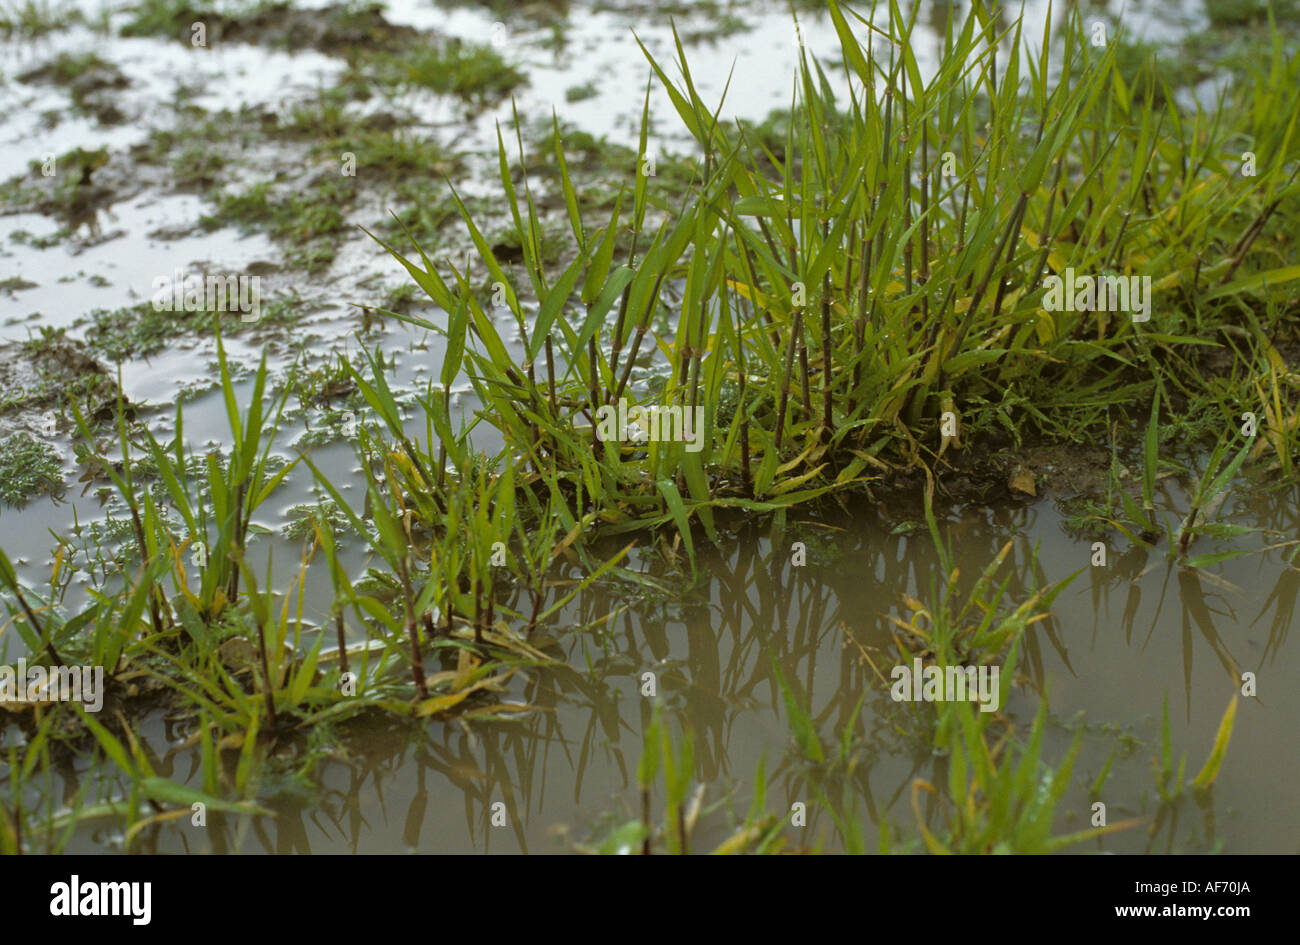 Jungen Gerstenpflanzen und Unkraut im Wasser stehend, nach starkem Regen Stockfoto